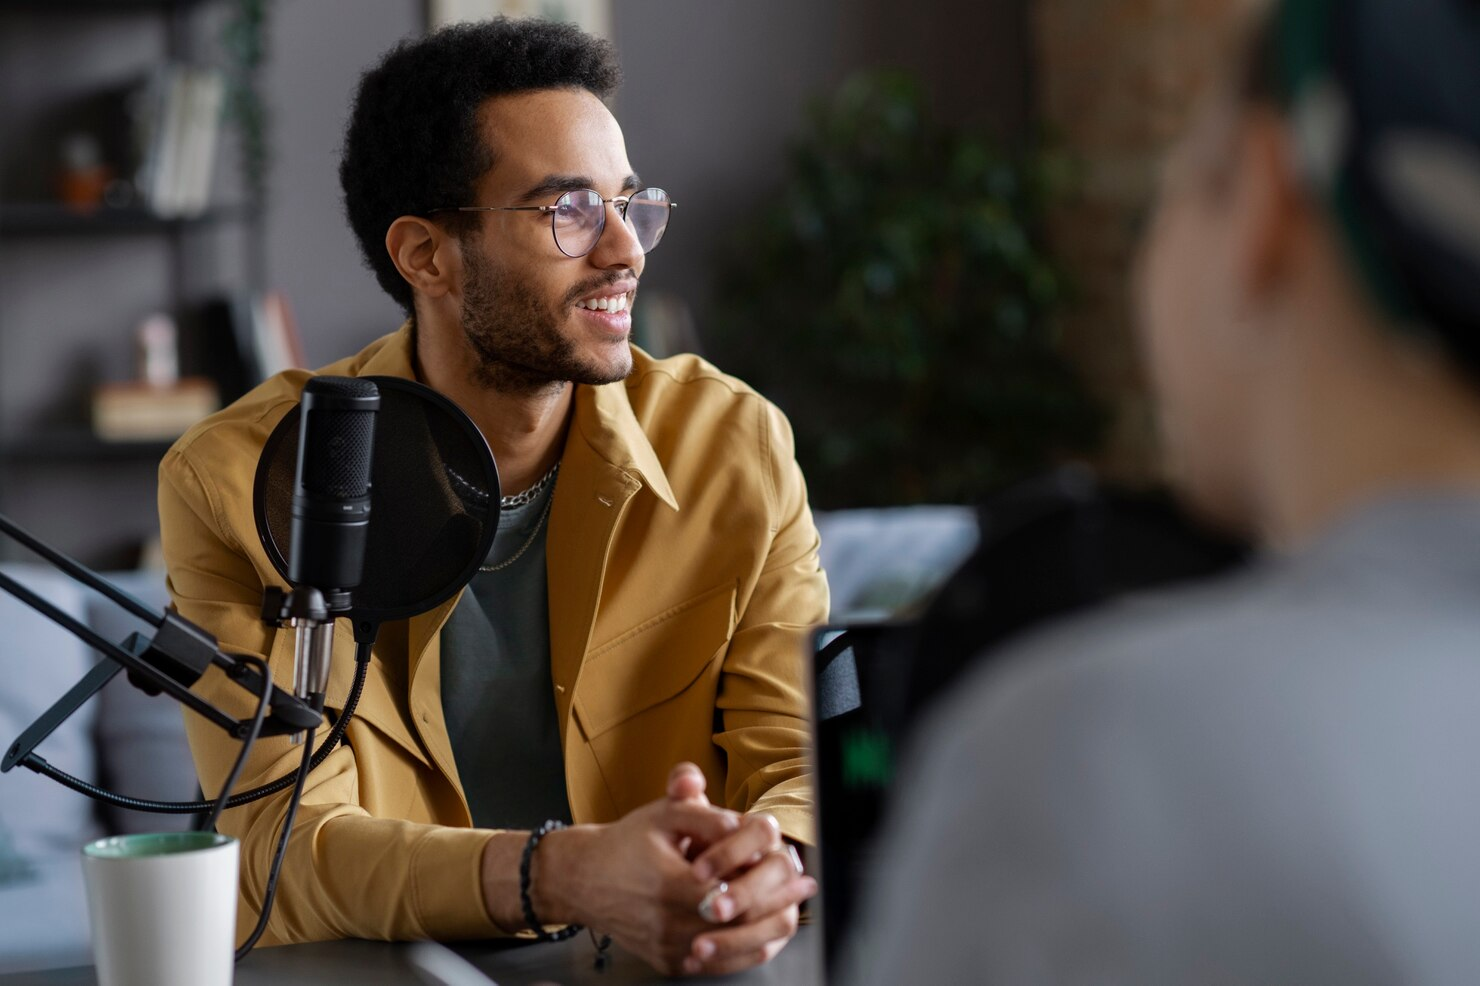 homem jovem negro, conversa com outro homem desfocado na frente de um microfone profissional durante a gravação de um podcast independente. Ele usa óculos, uma camisa cinza e por cima um blazer marrom claro